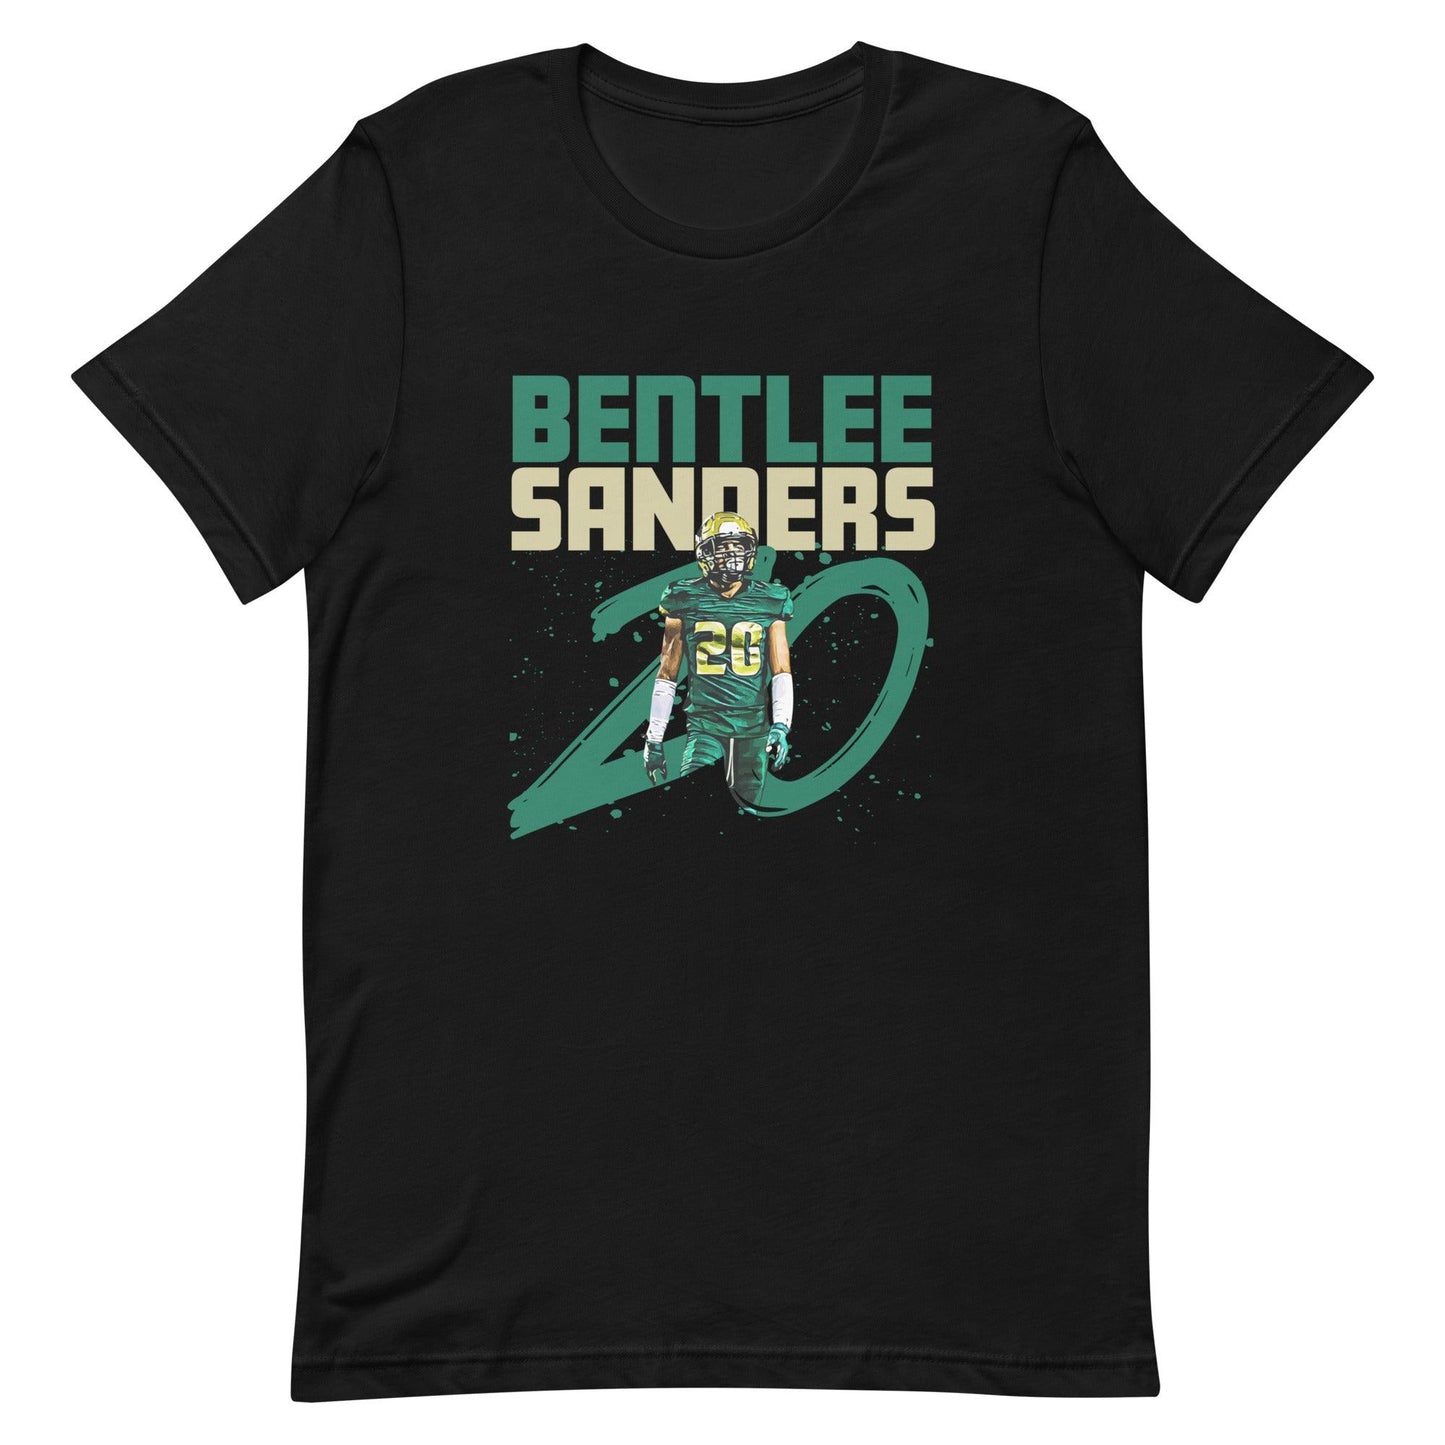 Bentlee Sanders "Gameday" t-shirt - Fan Arch